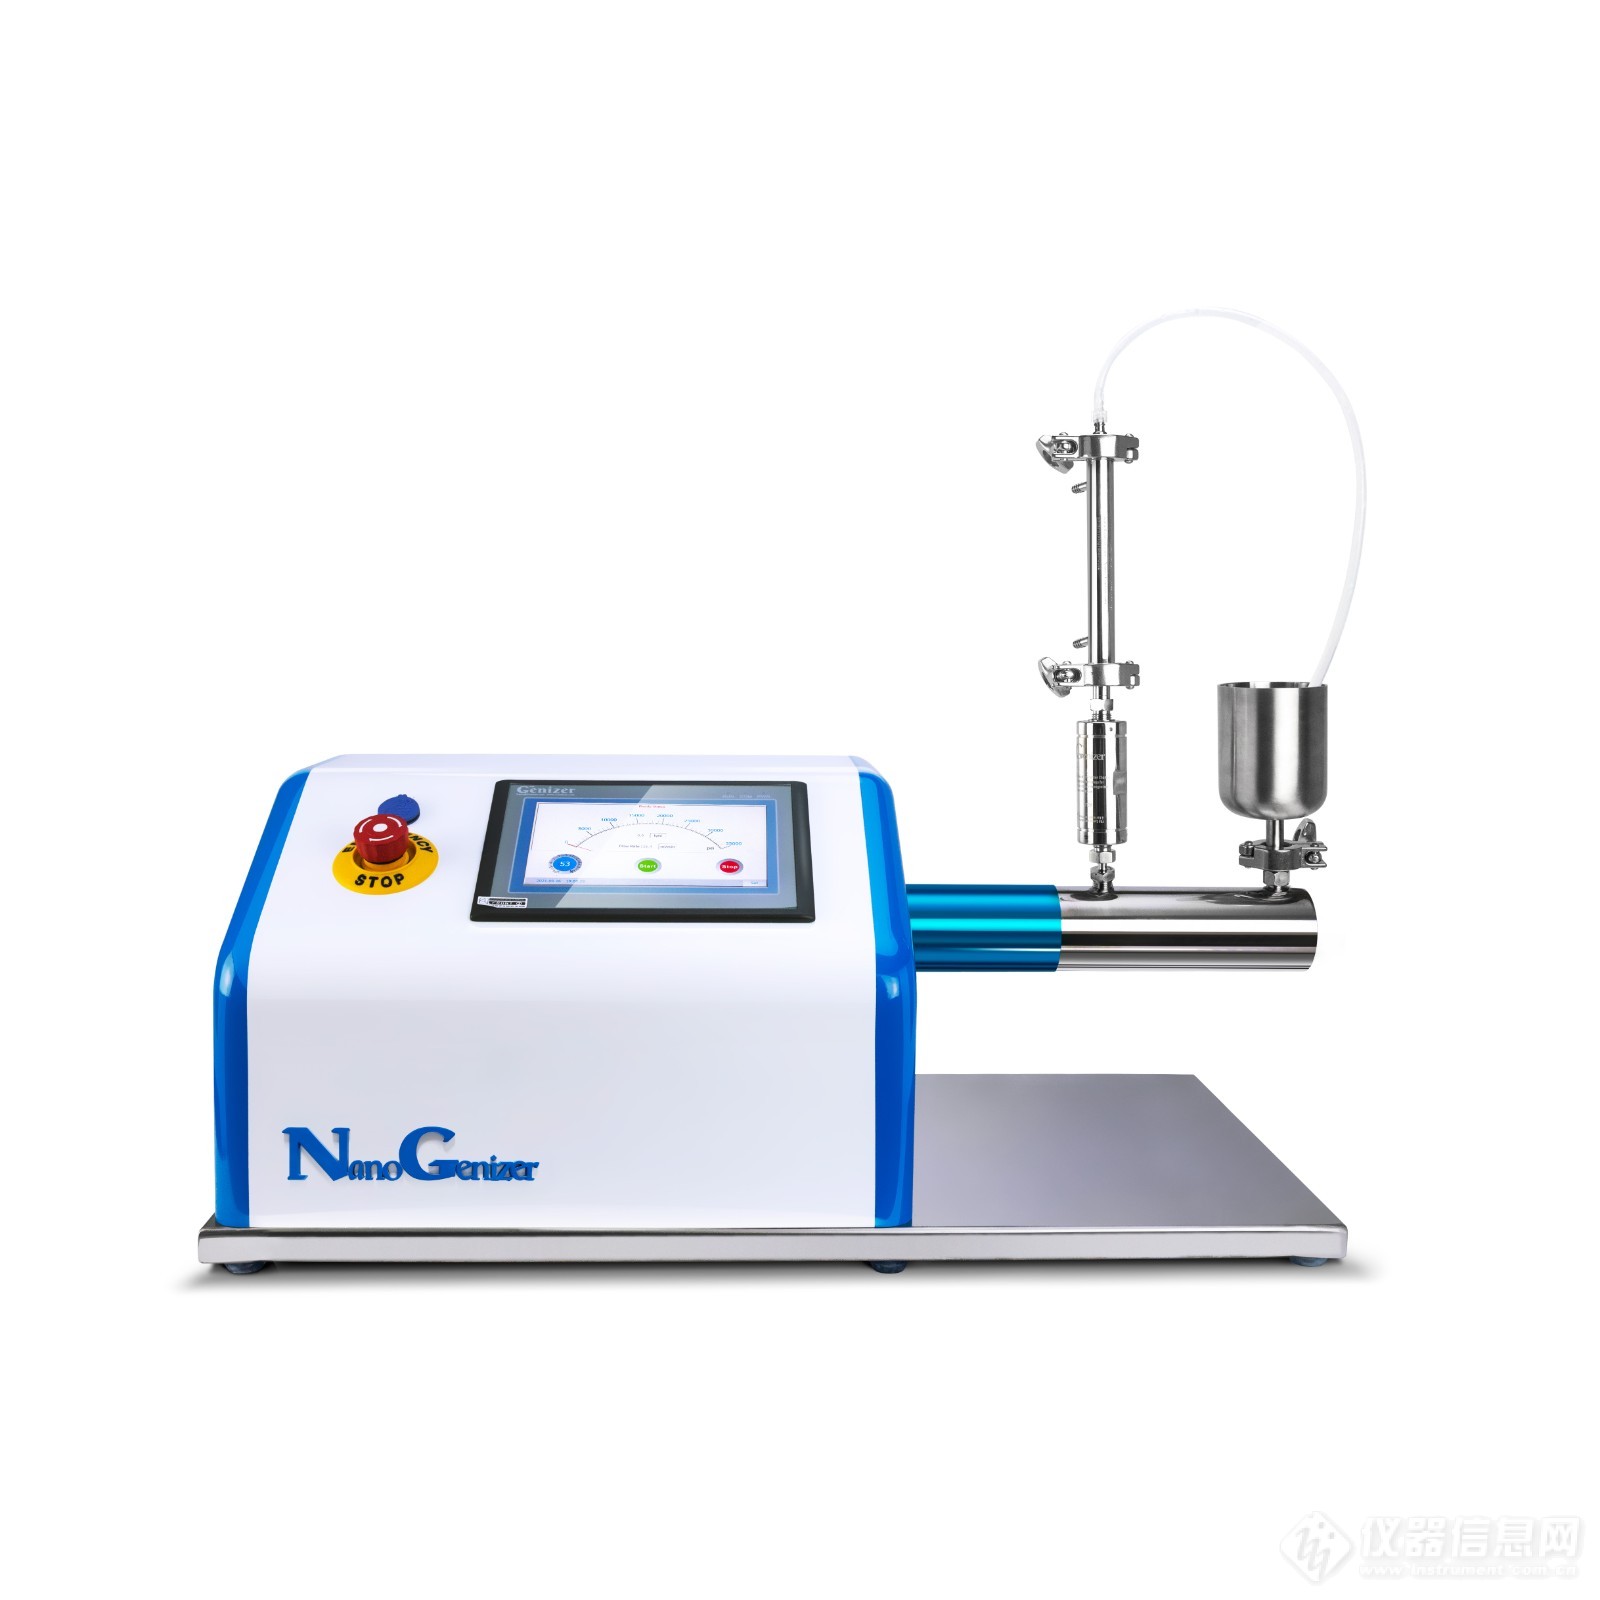 Nanogenizer (2).jpg